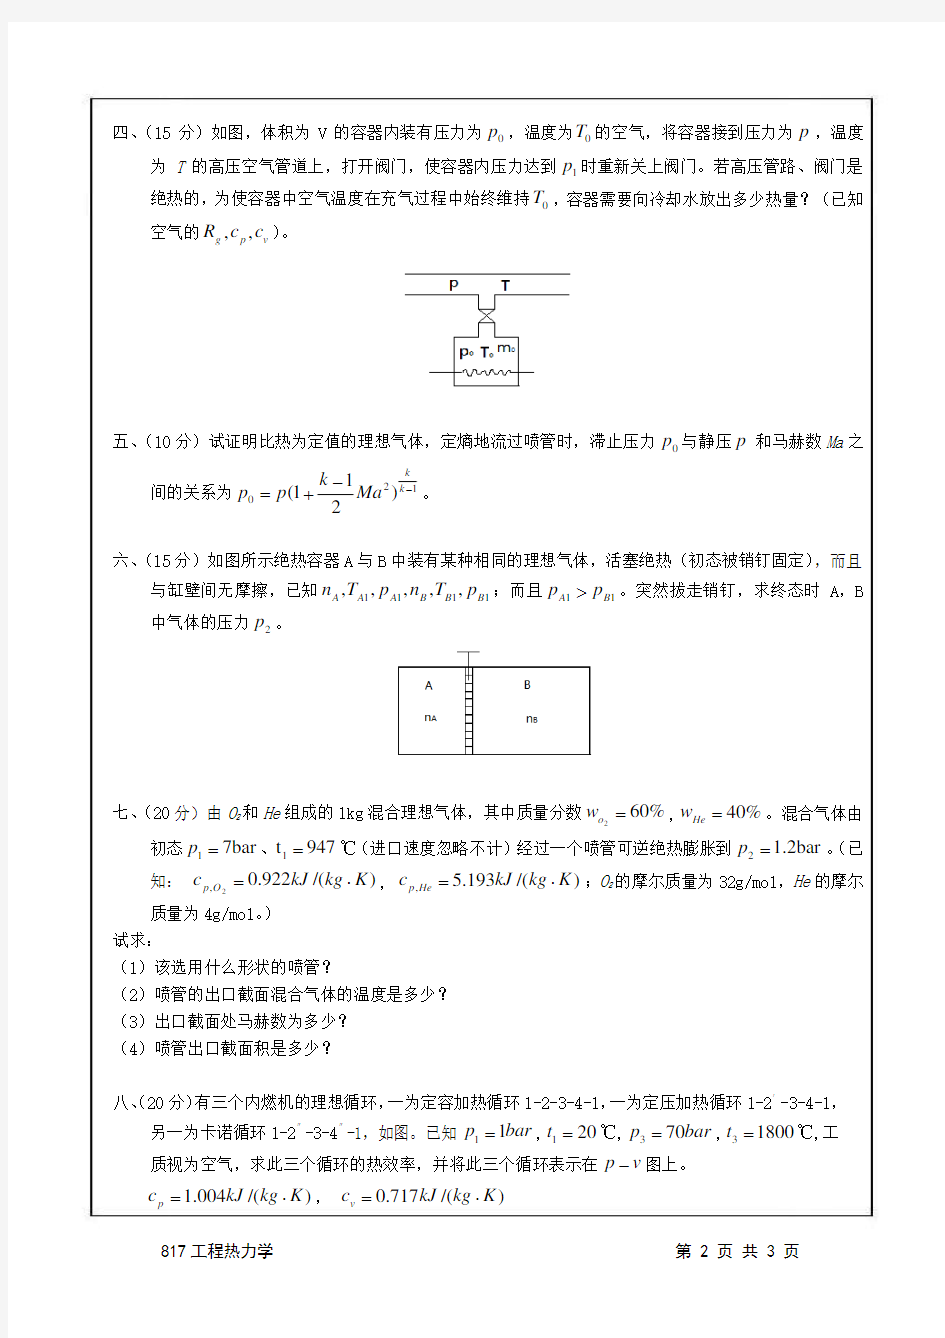 南京航空航天大学考研真题2011_817工程热力学(试题)